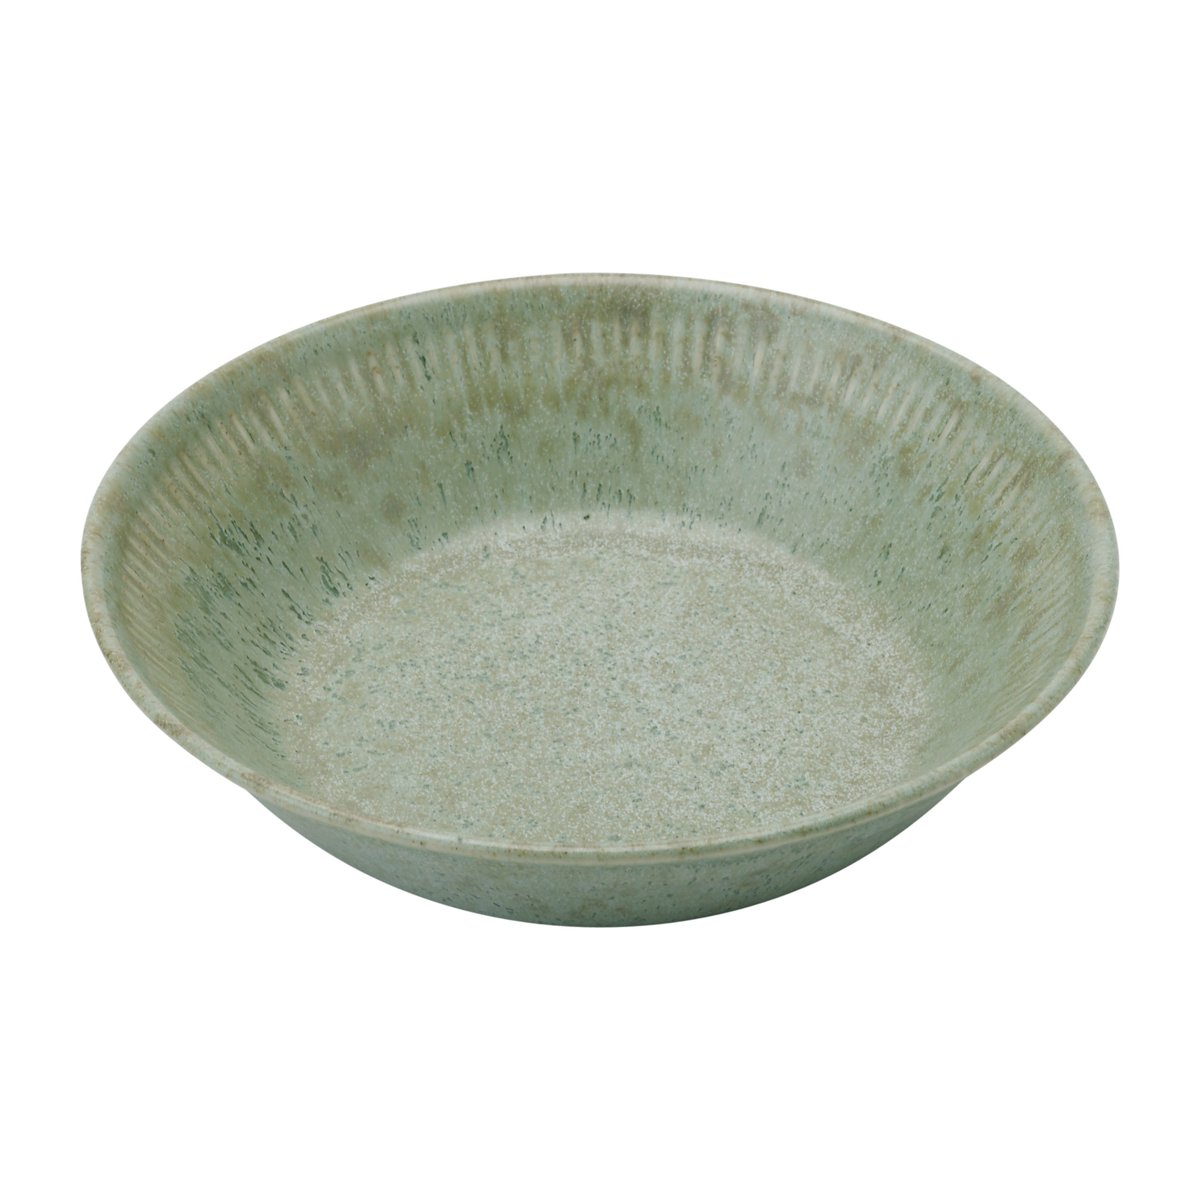 Knabstrup Keramik Knabstrup syvä lautanen oliivinvihreä 14,5 cm